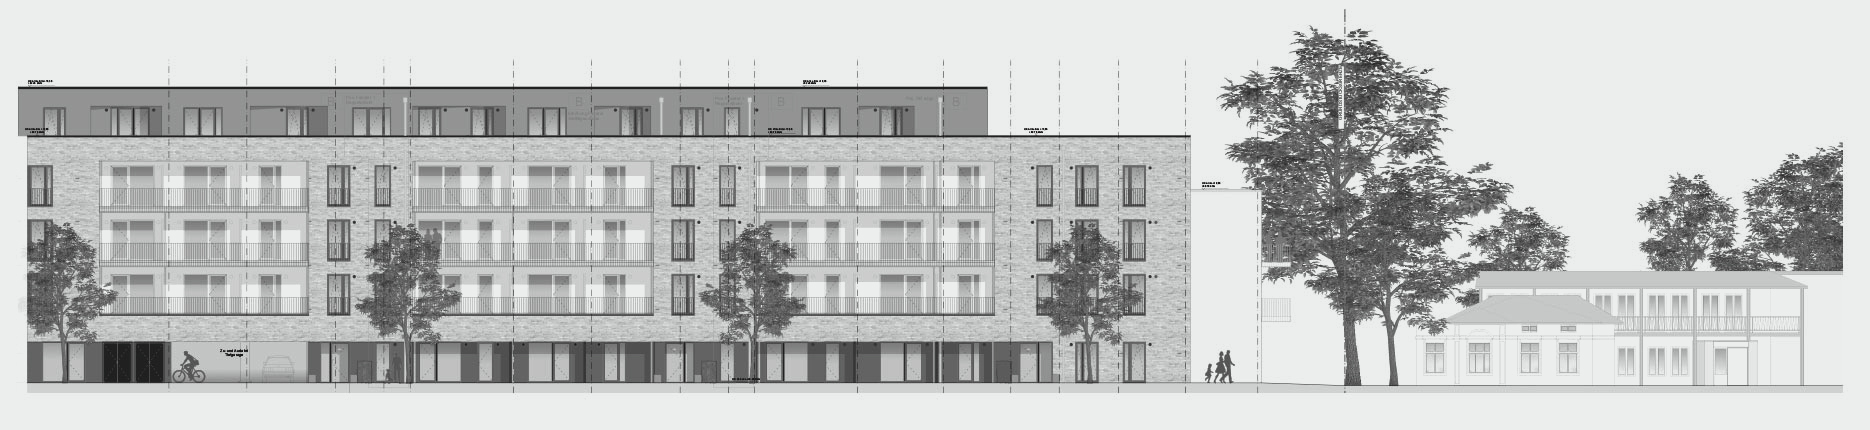 Architekturzeichnung - Diese Zeichnung zeigt ein Bauprojekt für Kapitalanleger in Ahrensburg.